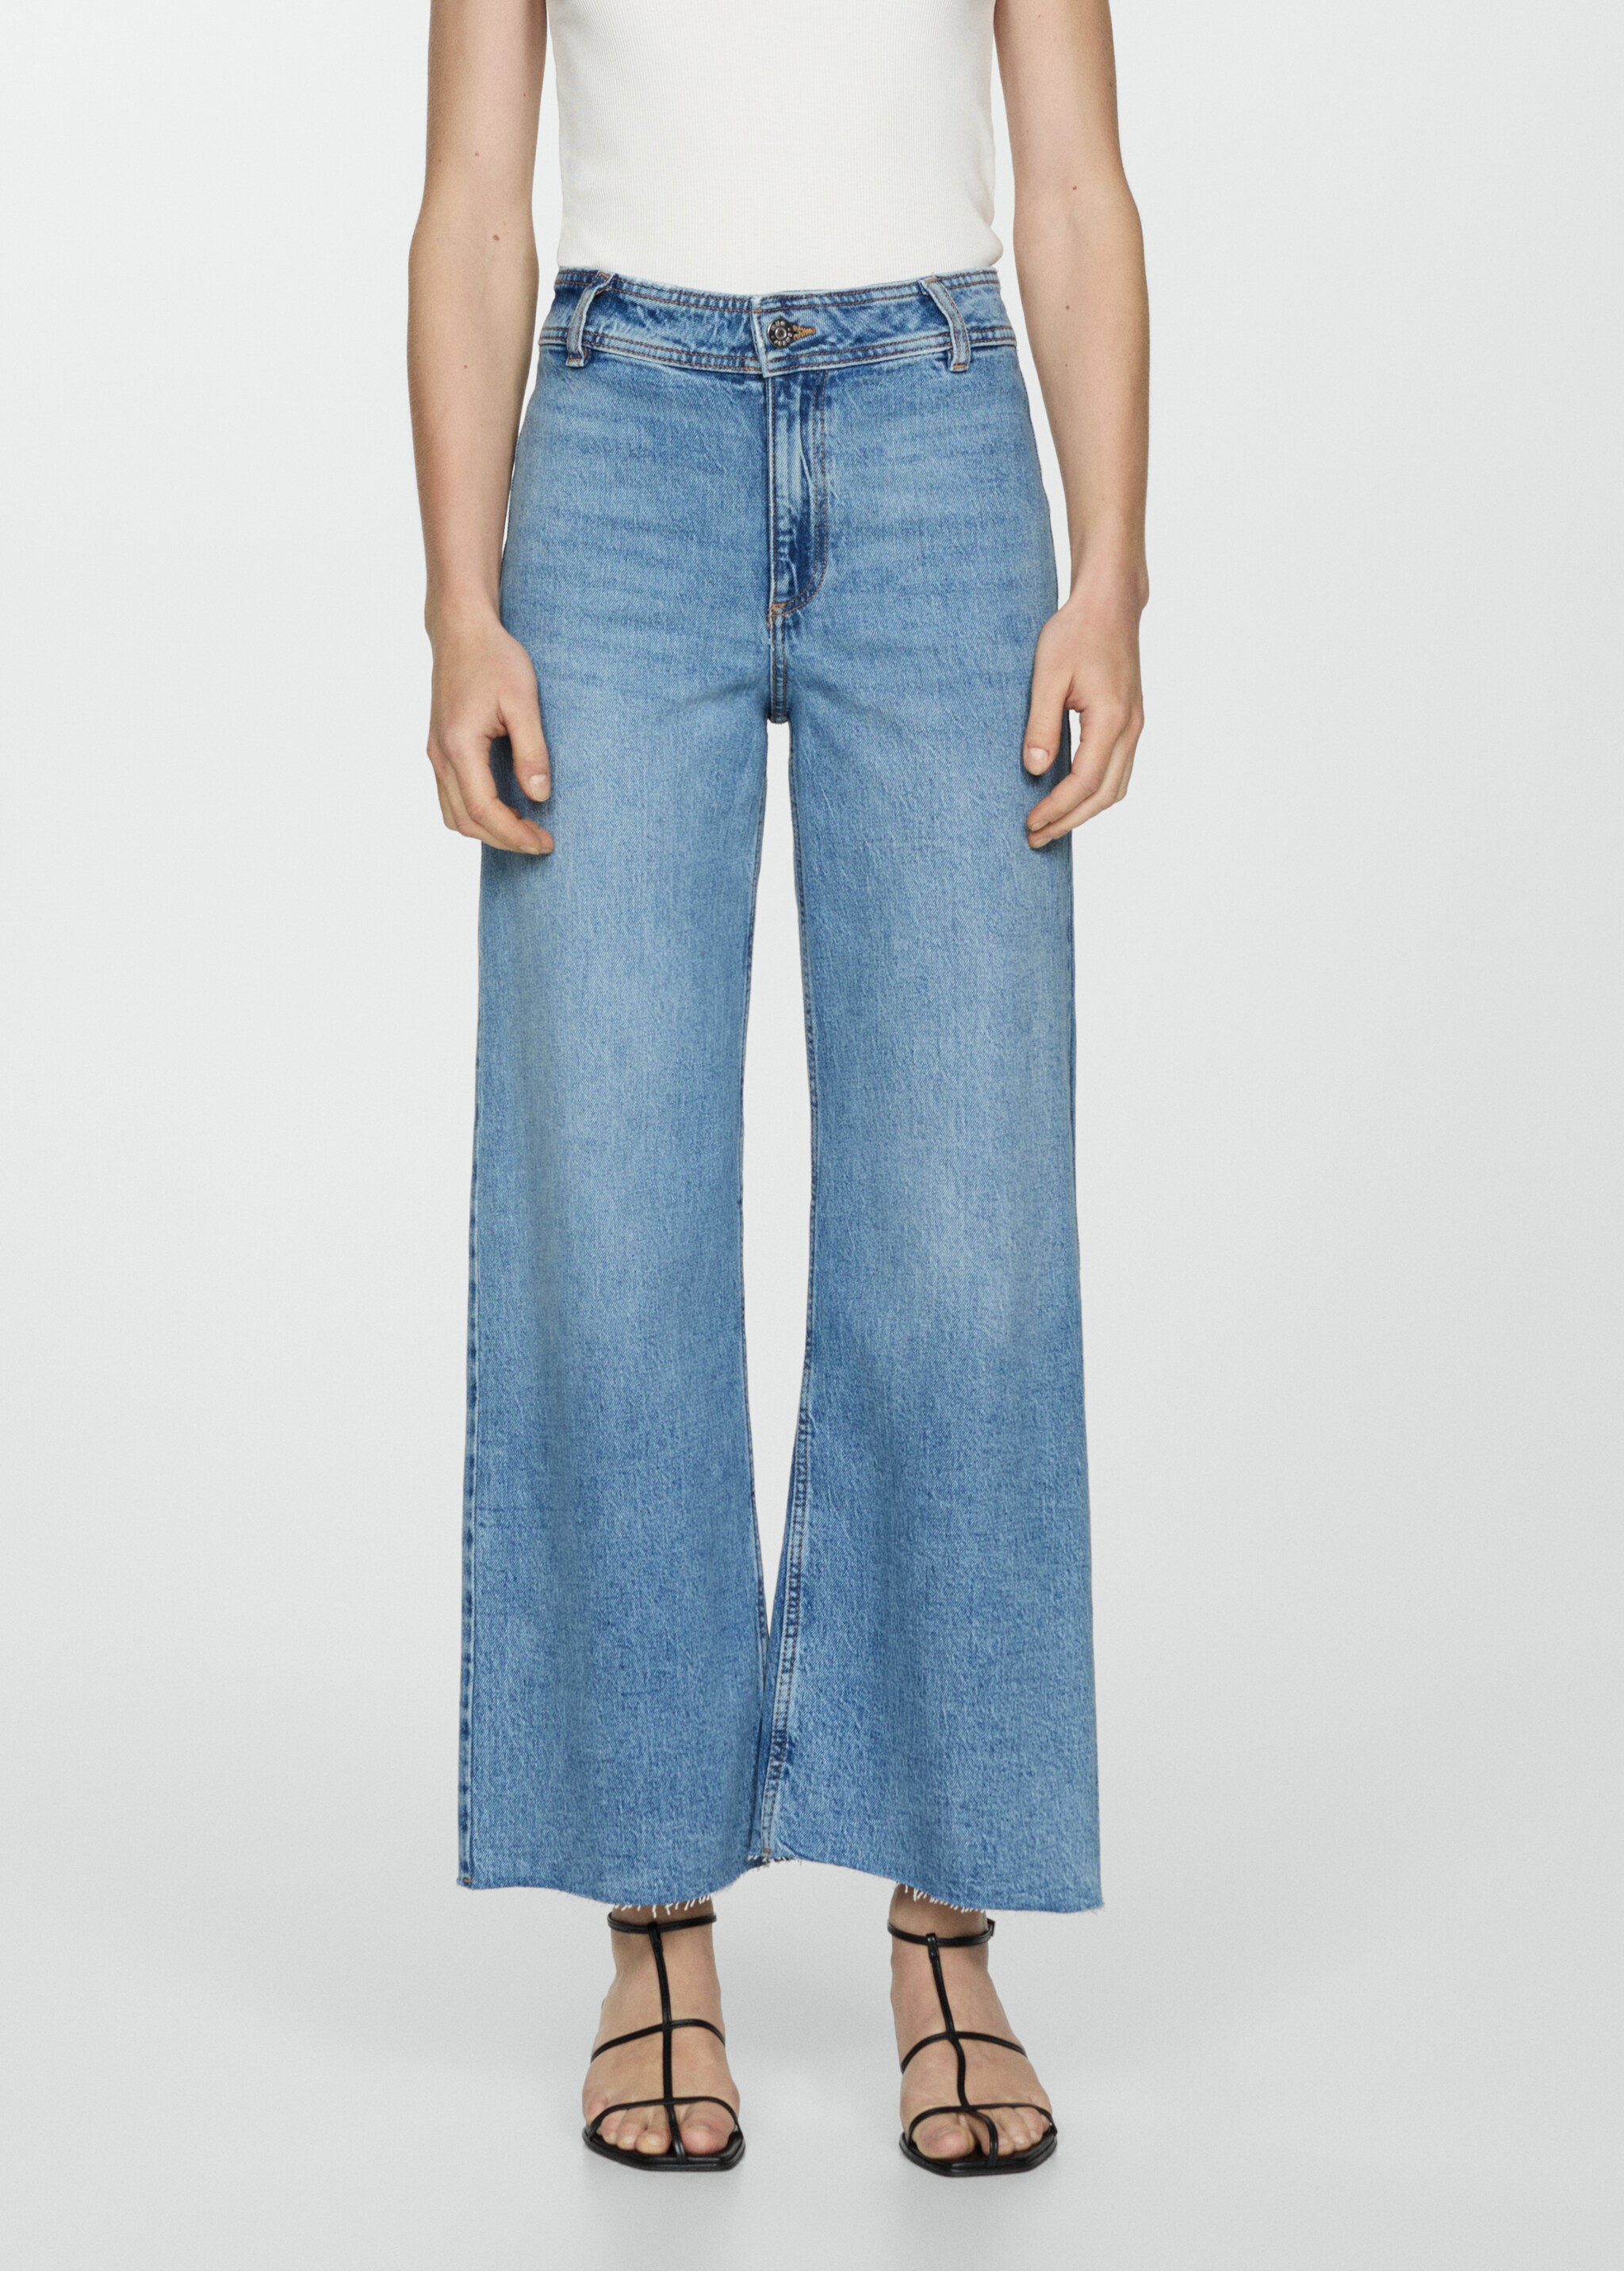 Jeans Catherin culotte tiro alto - Plano medio